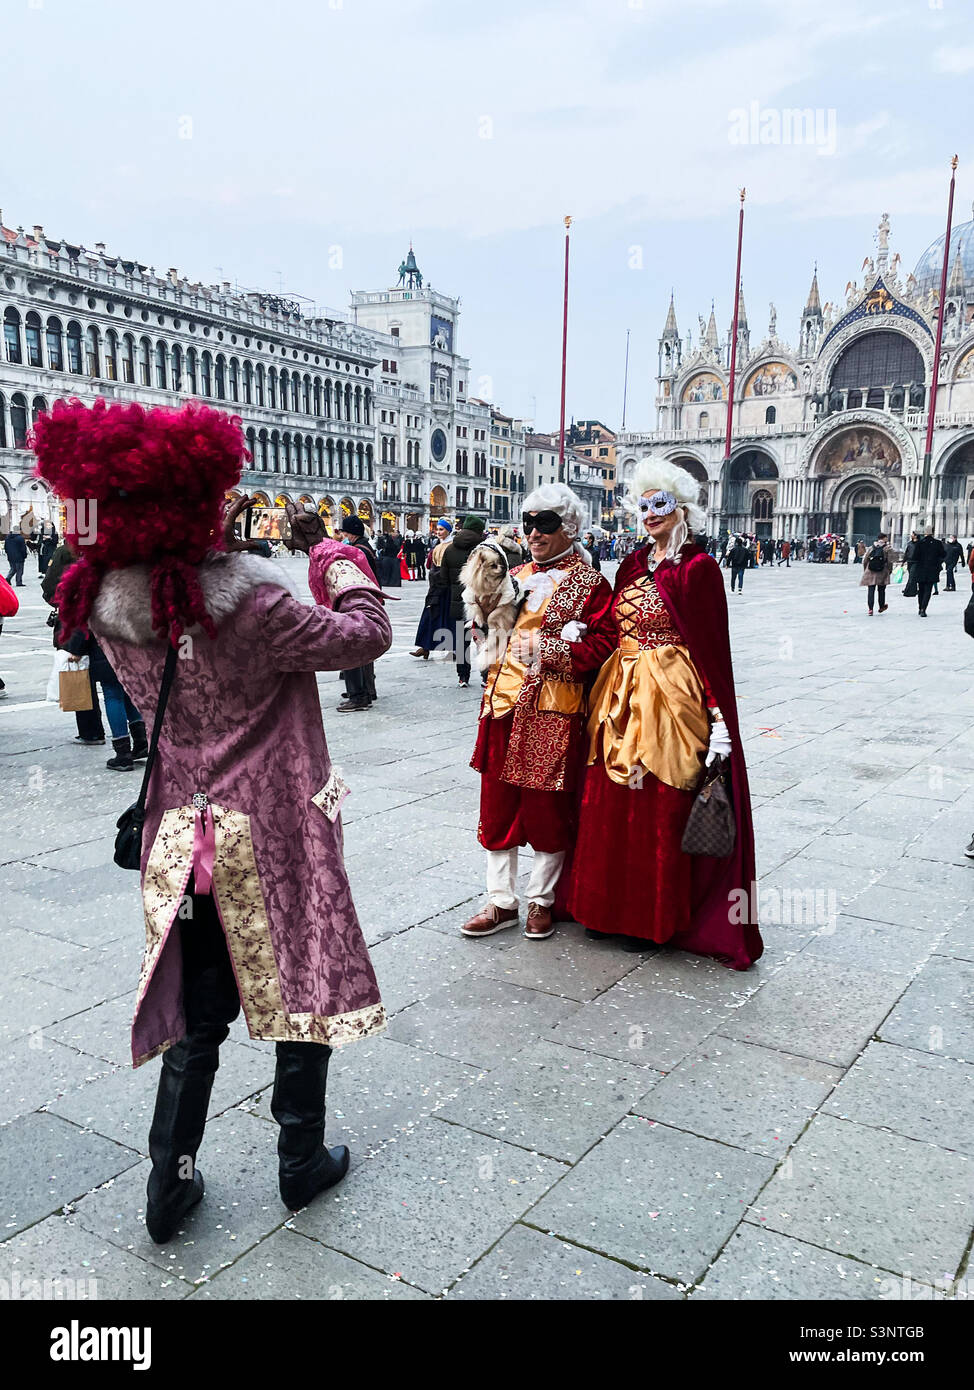 Persone vestite in costumi storici in Piazza San Marco a Venezia, in Italia  durante Carnevale. Su uomo vestito in costume sta scattando una foto di una  coppia anche vestita per le feste